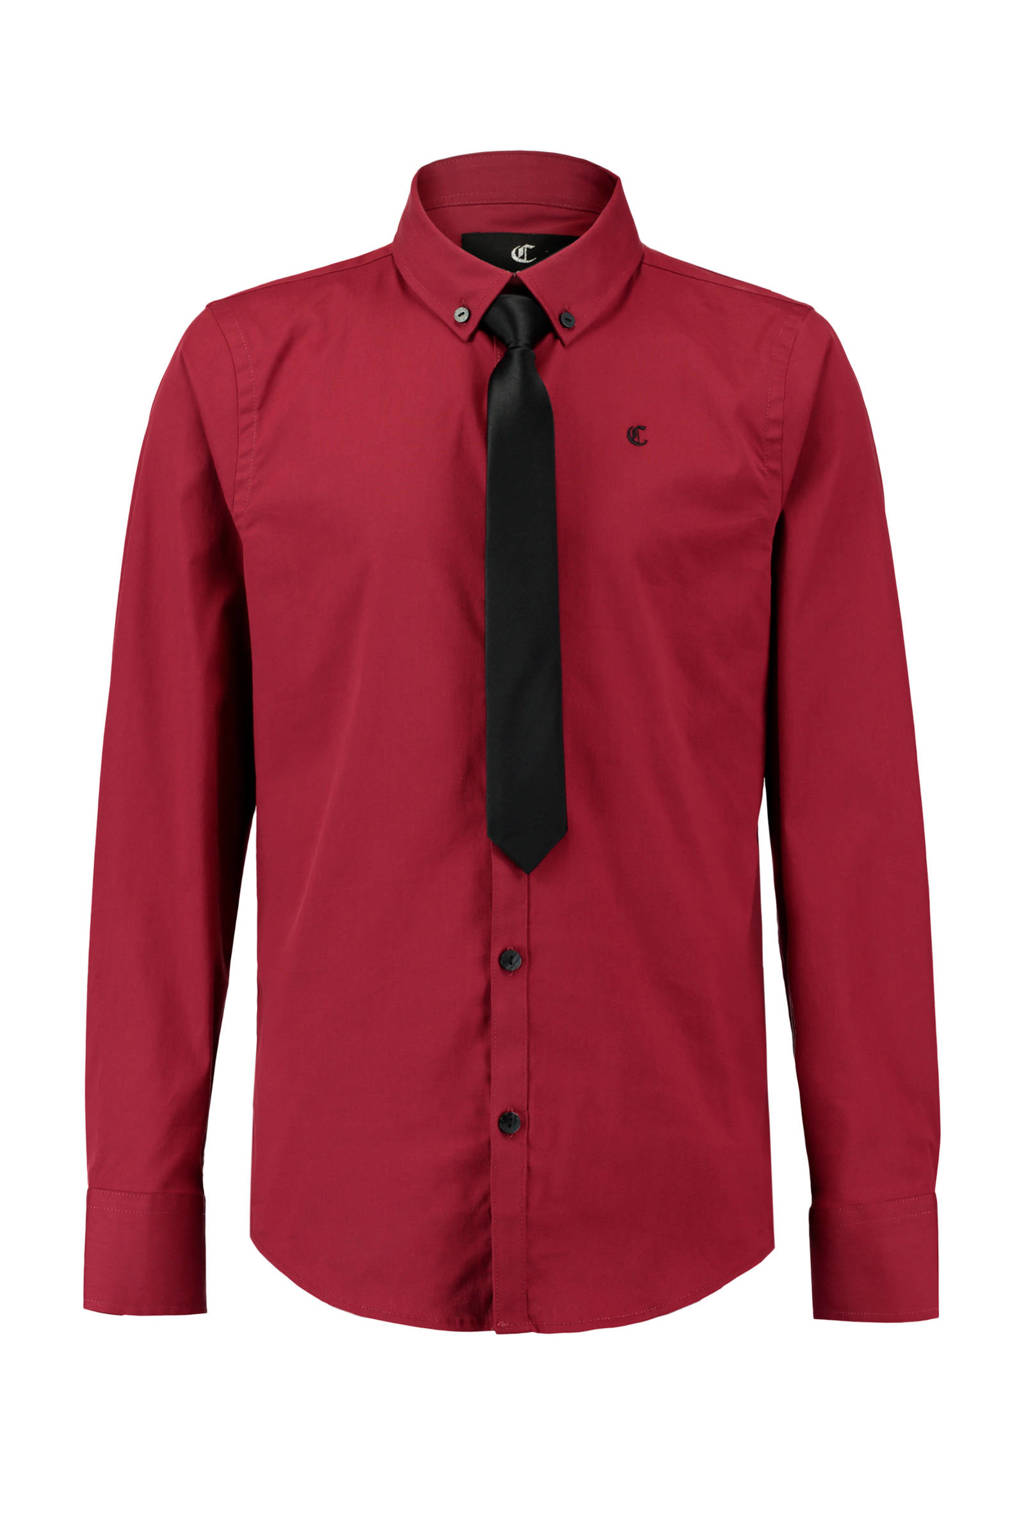 Zwerver kubiek welvaart CoolCat overhemd + stropdas rood | wehkamp